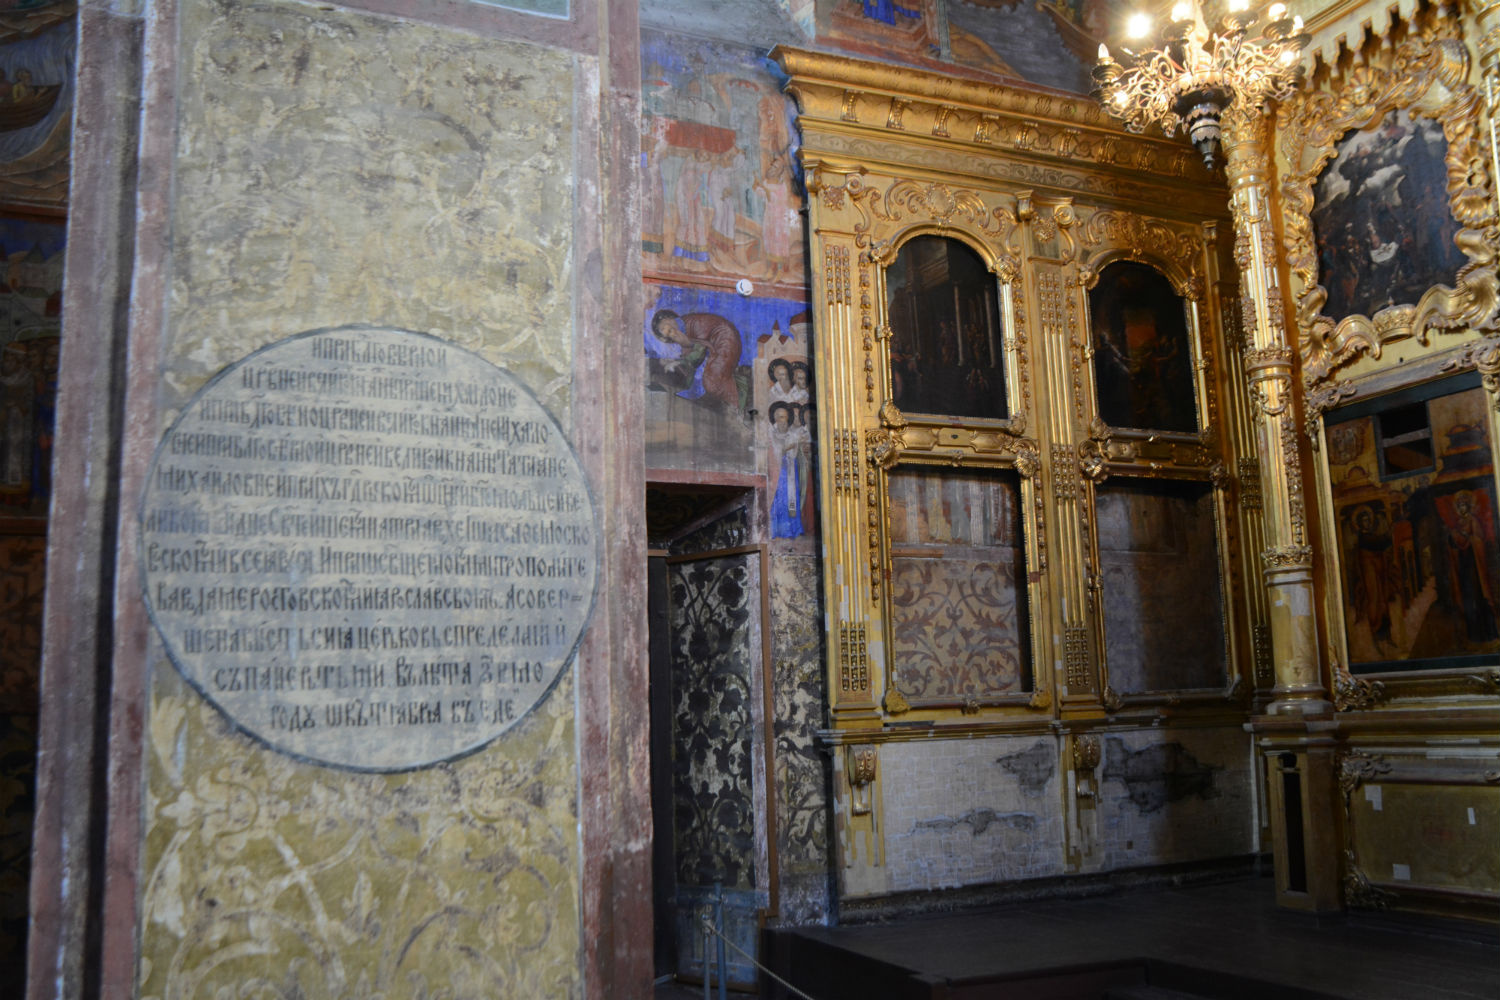 Работы по росписи храма были завершены за короткий срок с 5 июля  по 5 октября 1640 года